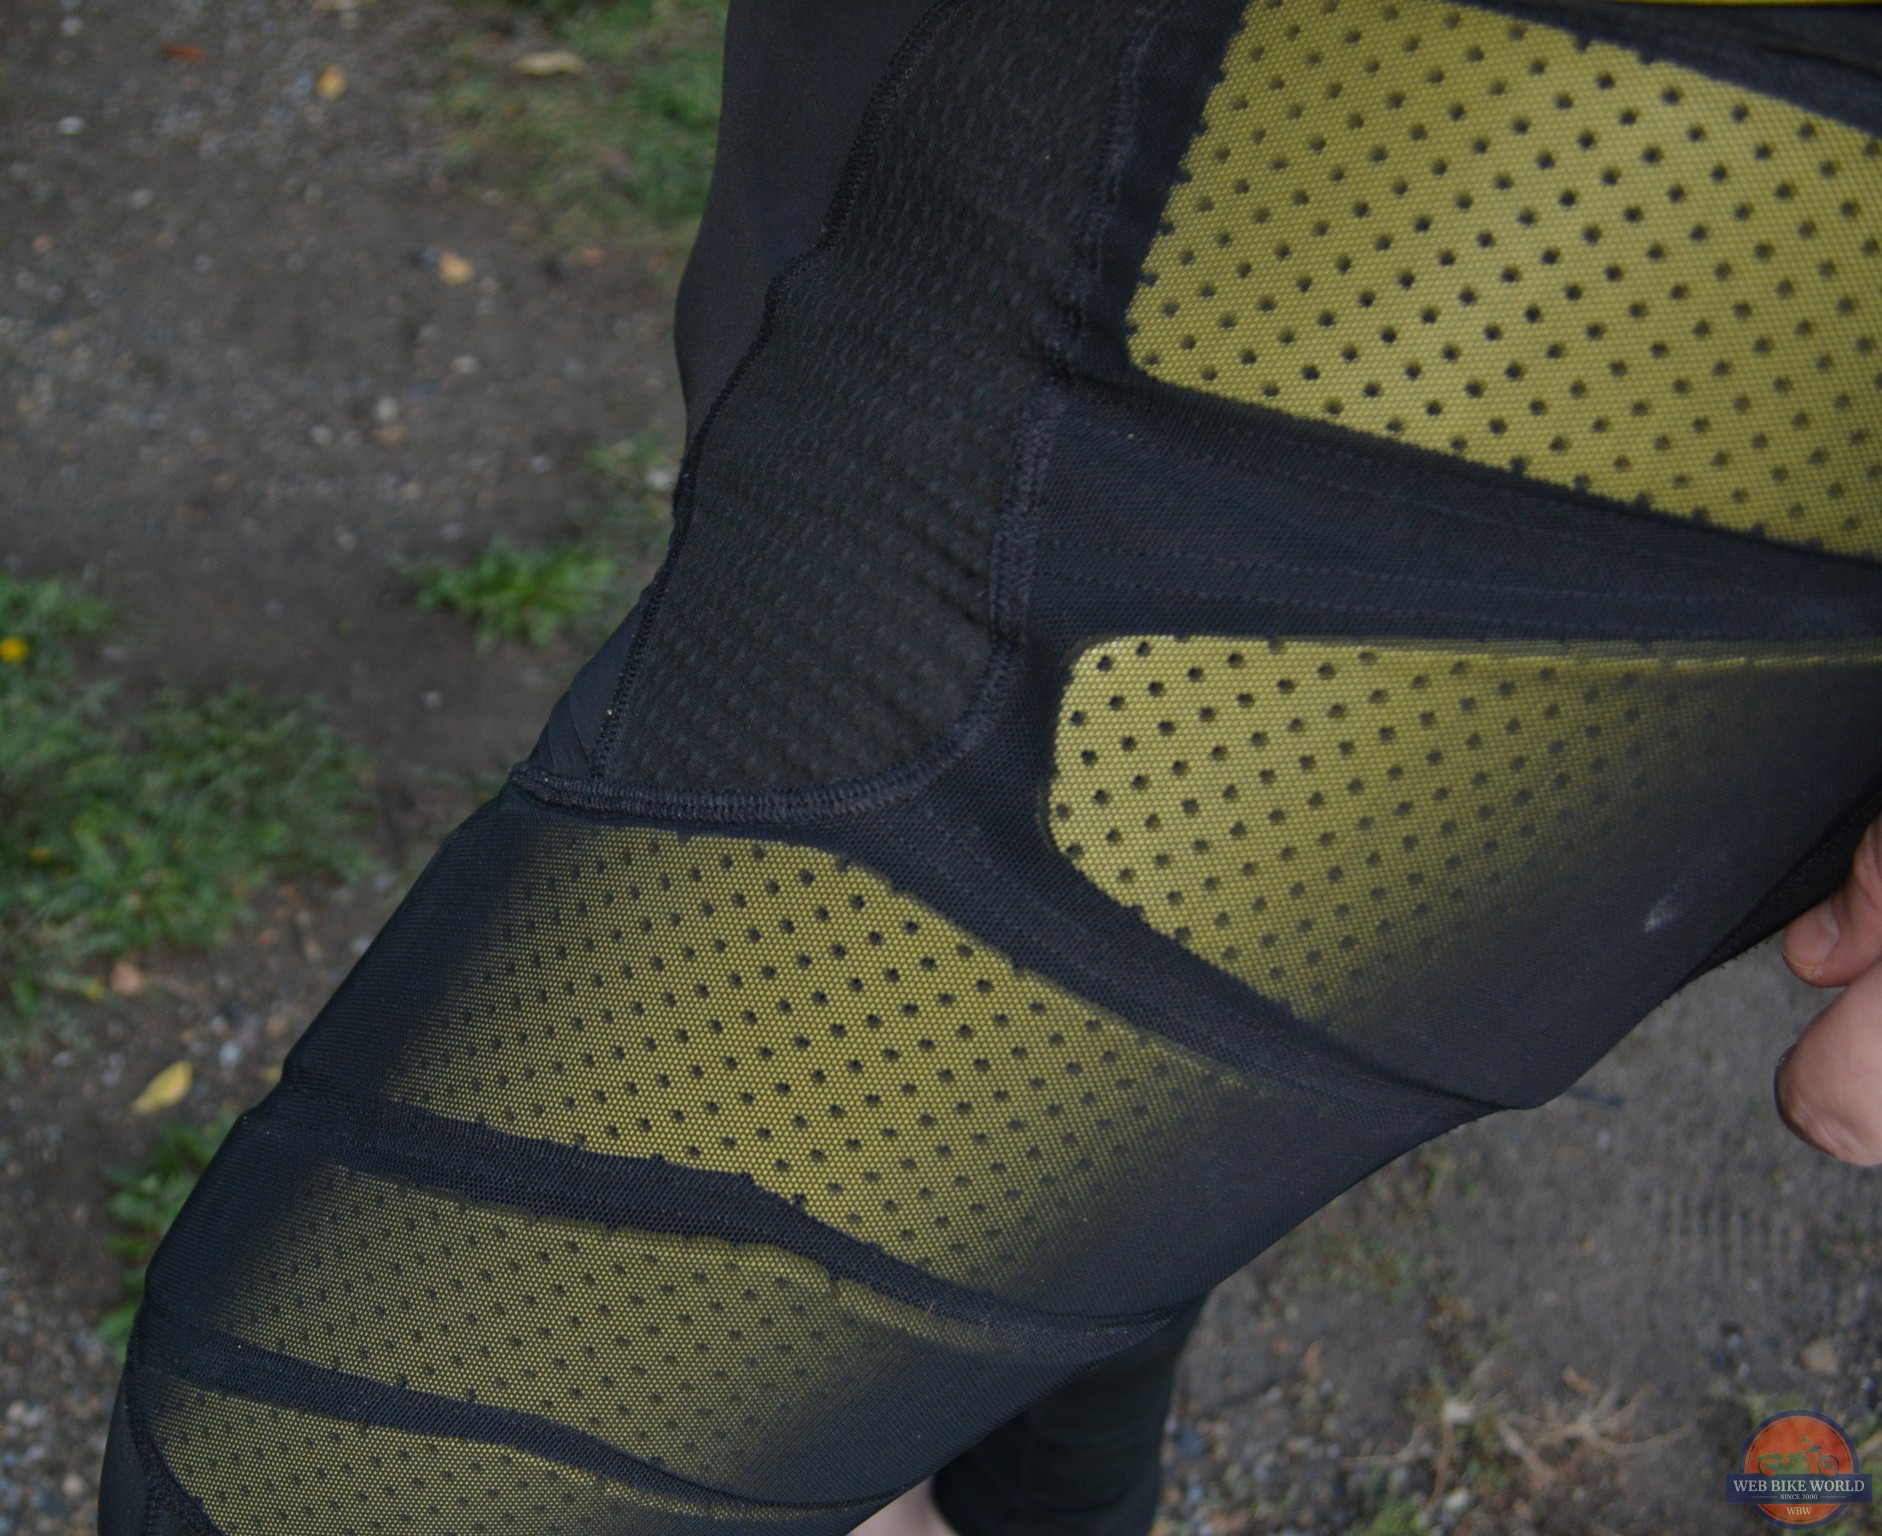 Closeup of Klimatek mesh fabric on base layer